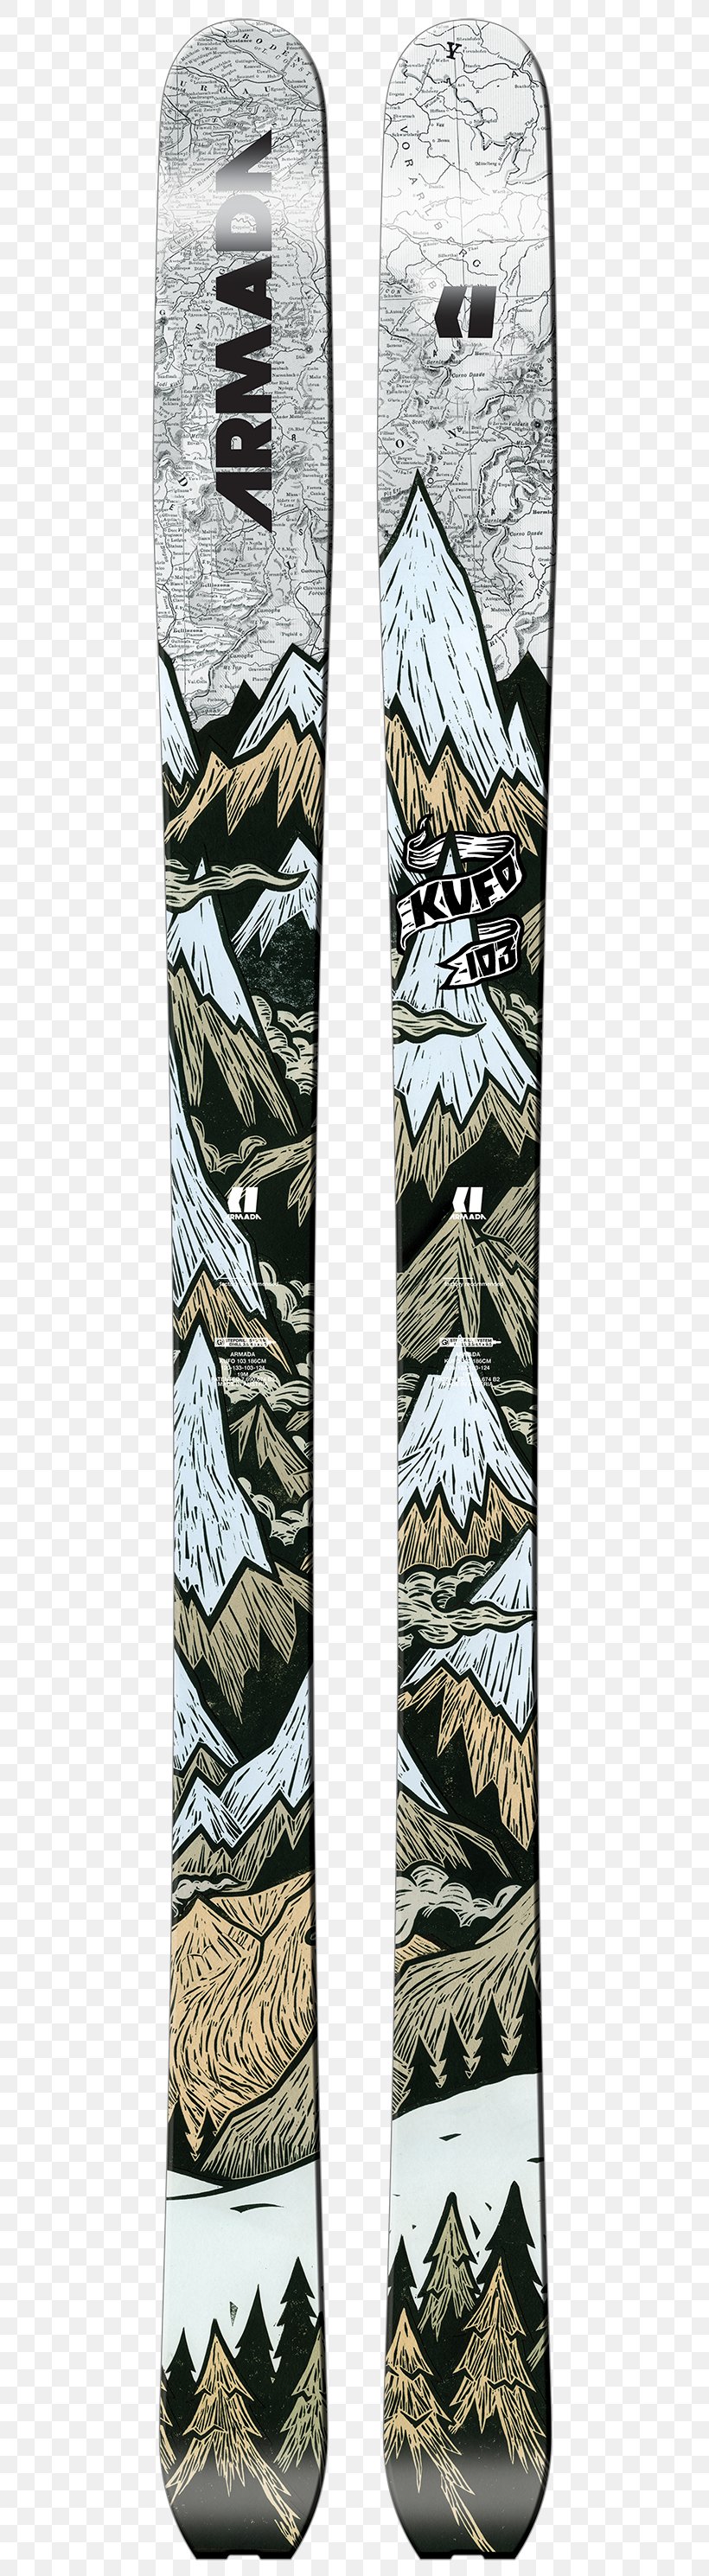 Atomic Skis Armada Alpine Skiing Sporting Goods, PNG, 500x2979px, Ski, Alpine Ski, Alpine Skiing, Armada, Atomic Skis Download Free